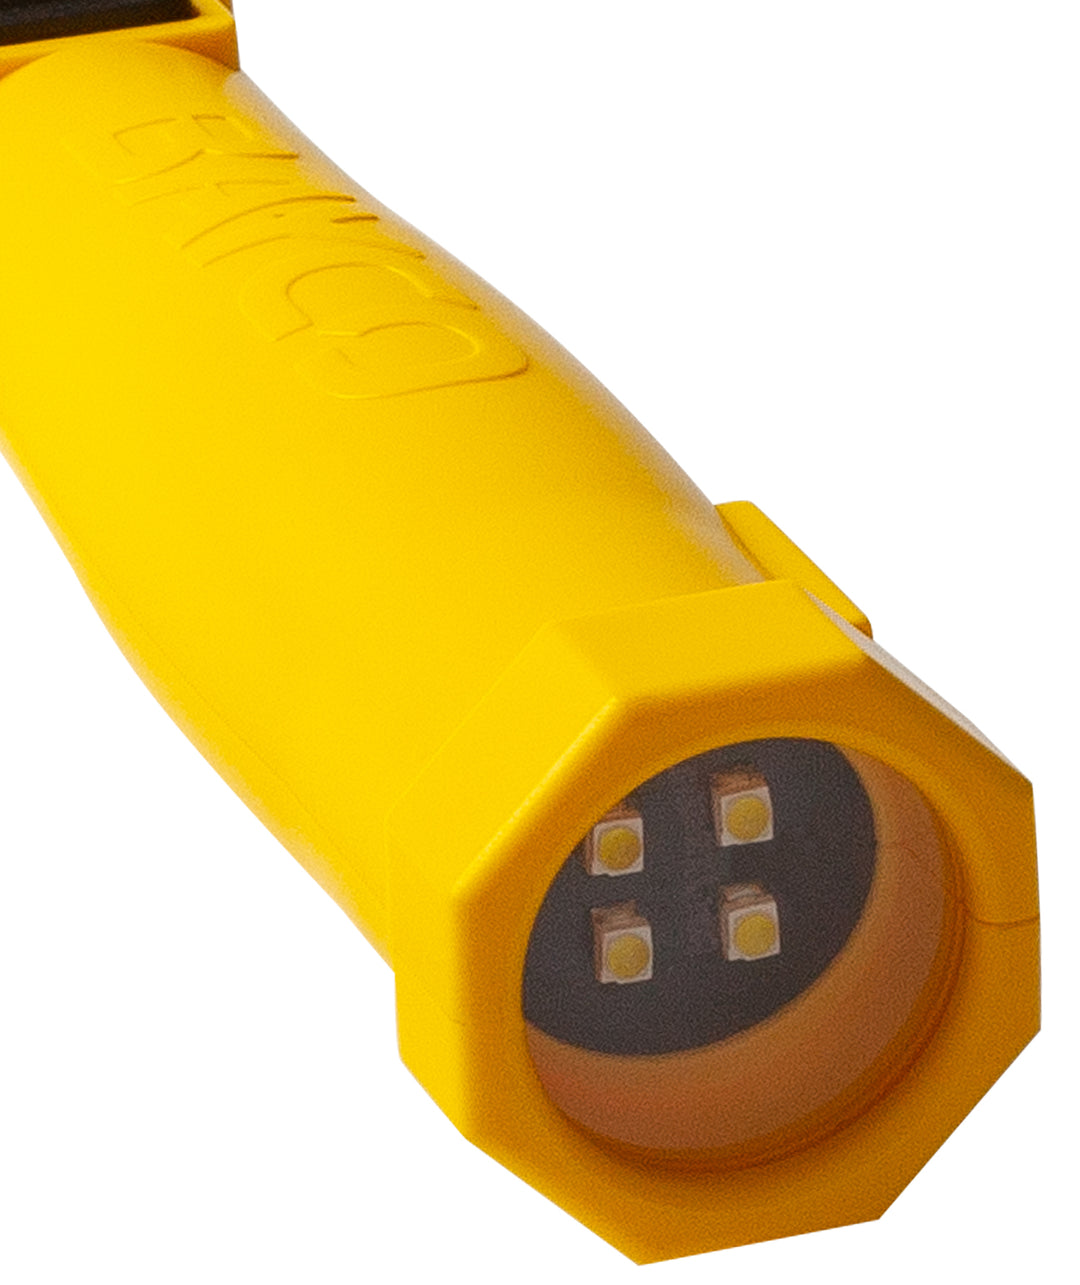 SLR-2134: 2-in-1 LED Work Light w/Spot Light - Rechargeable